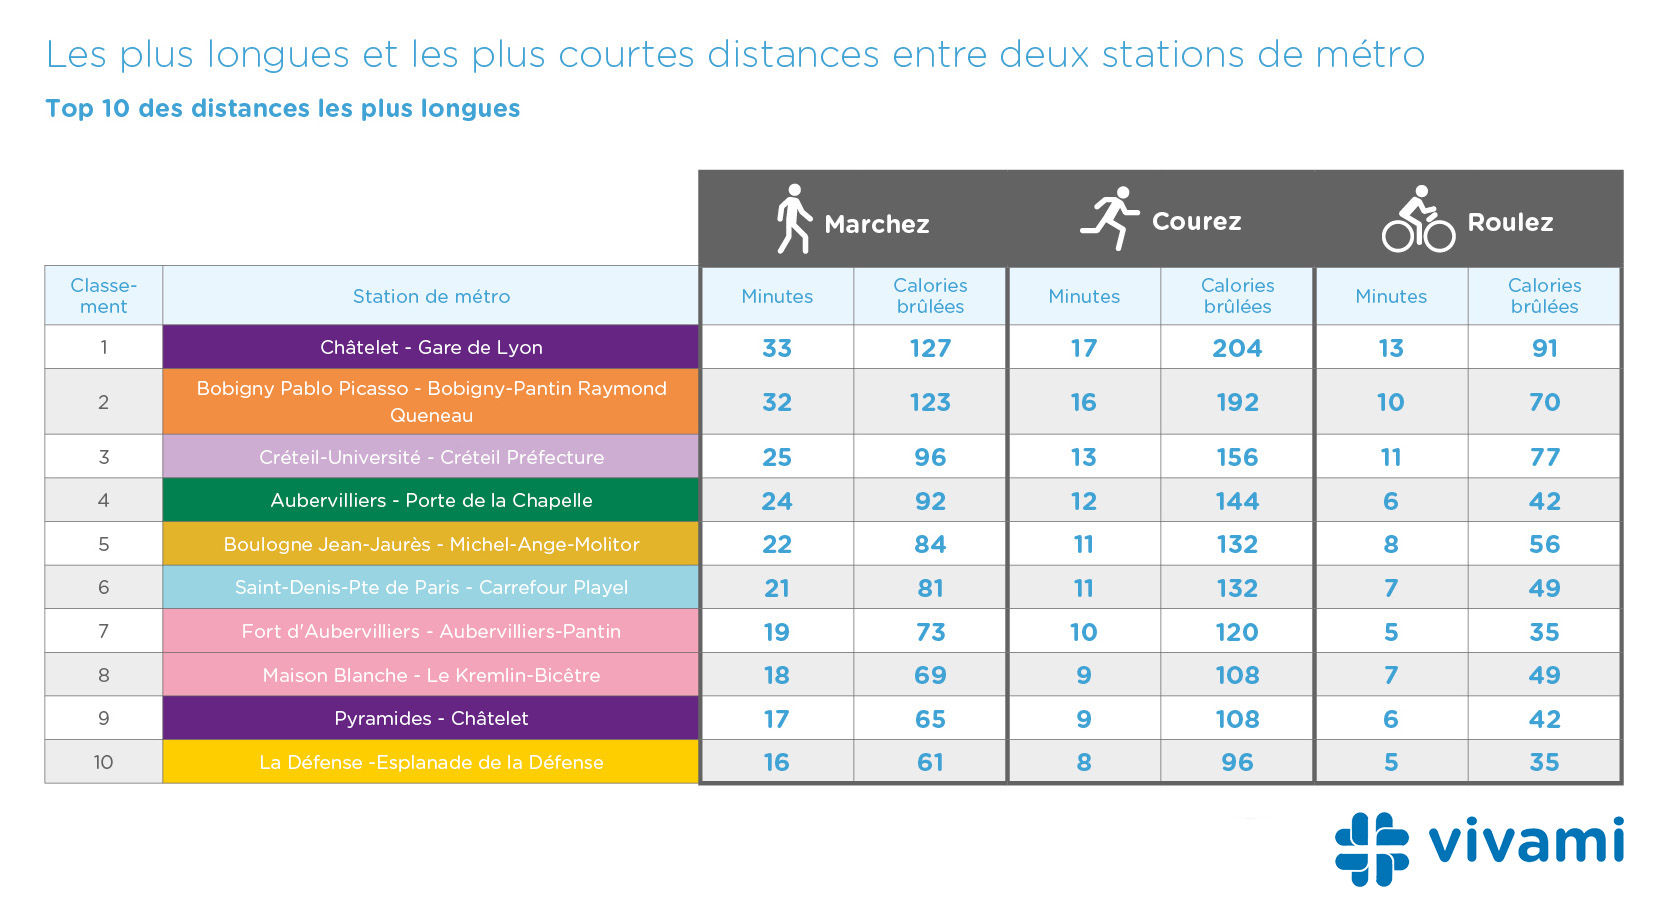 Classement des distances les plus longues entre deux stations de métro dans Paris par métro - Vivami.co